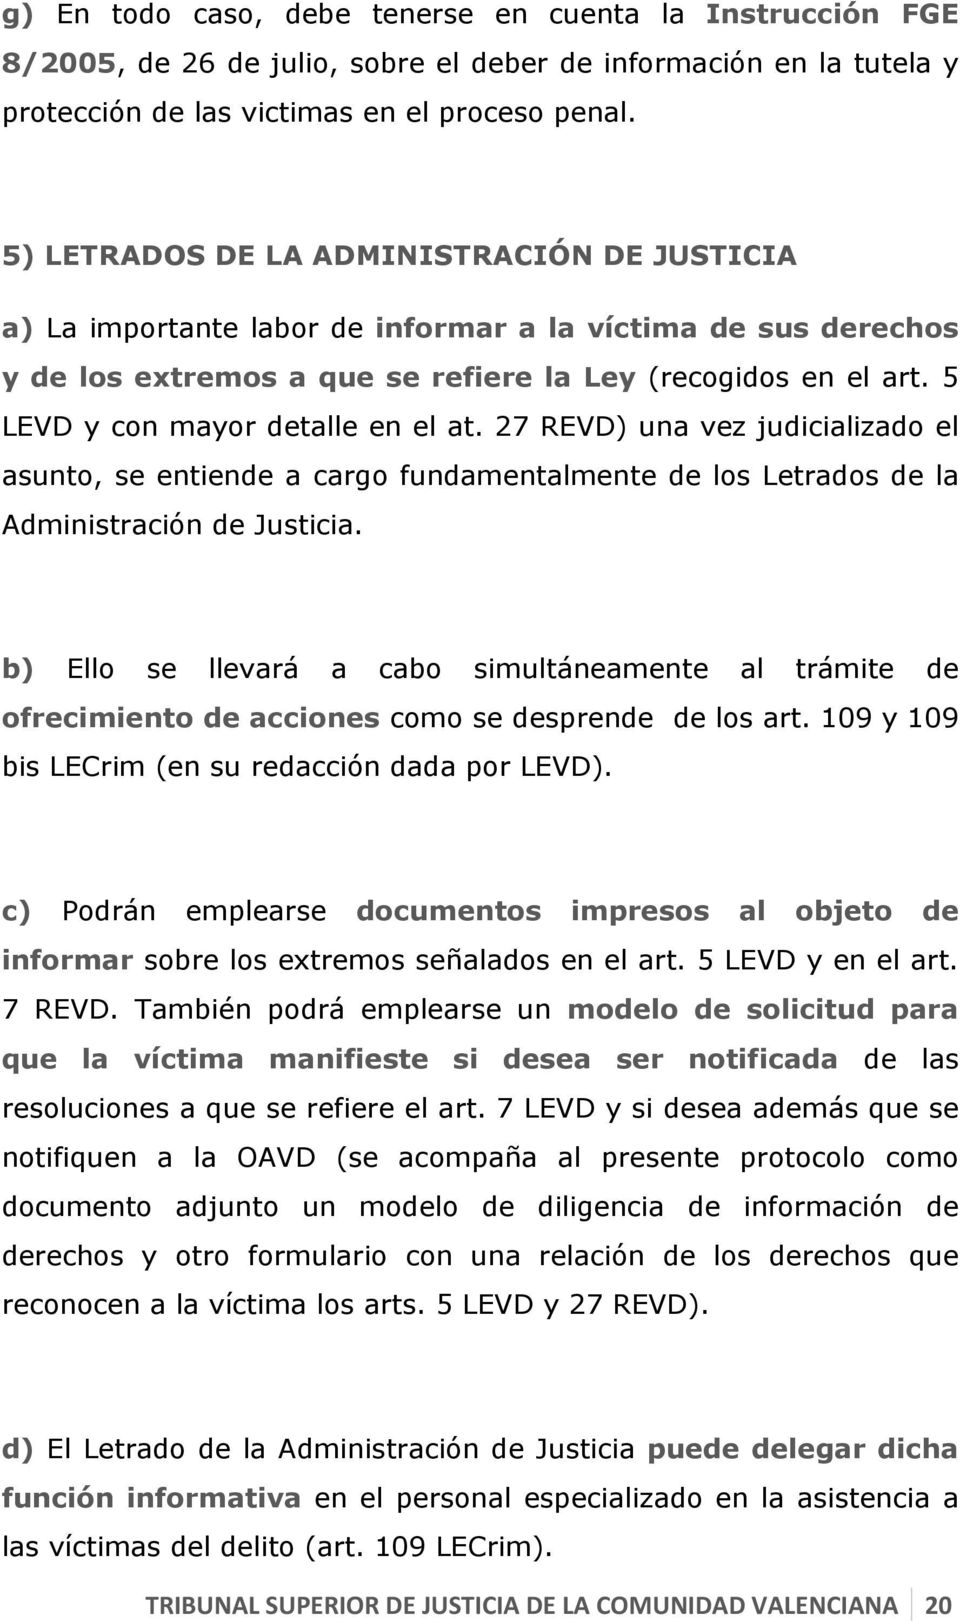 5 LEVD y con mayor detalle en el at. 27 REVD) una vez judicializado el asunto, se entiende a cargo fundamentalmente de los Letrados de la Administración de Justicia.